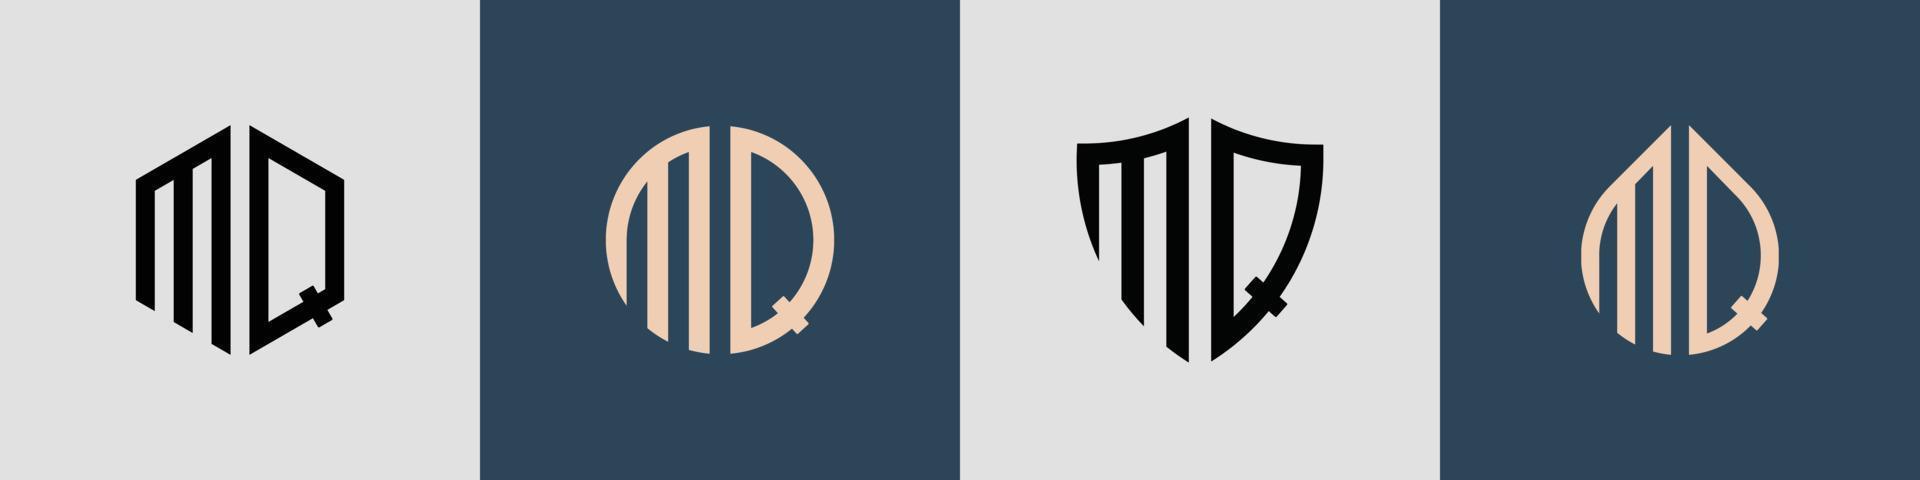 creativo semplice iniziale lettere mq logo disegni fascio. vettore